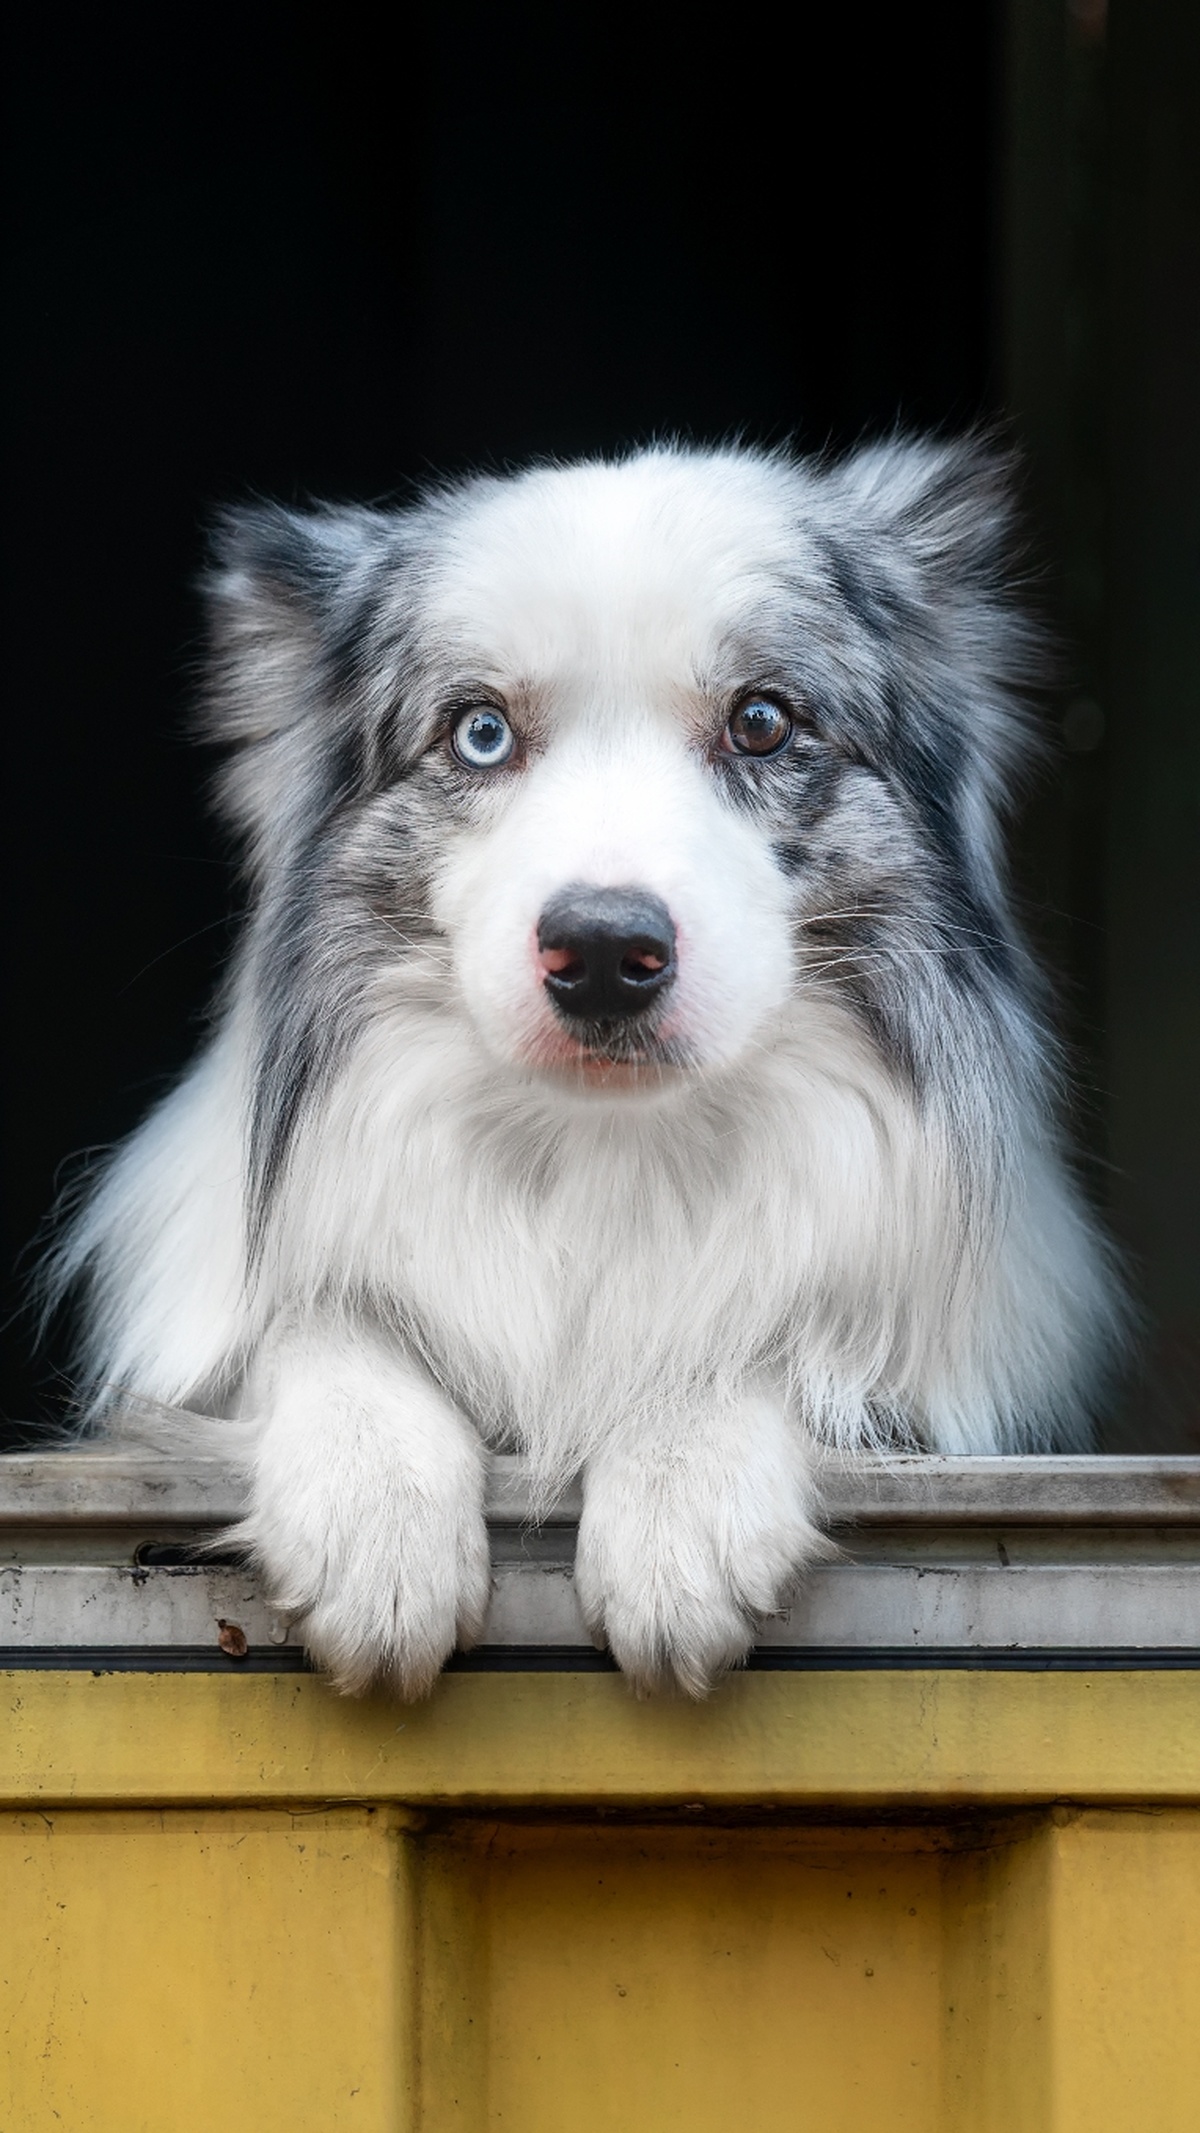 一只小狗 眼睛是蓝色的 正在透过窗户向外看。